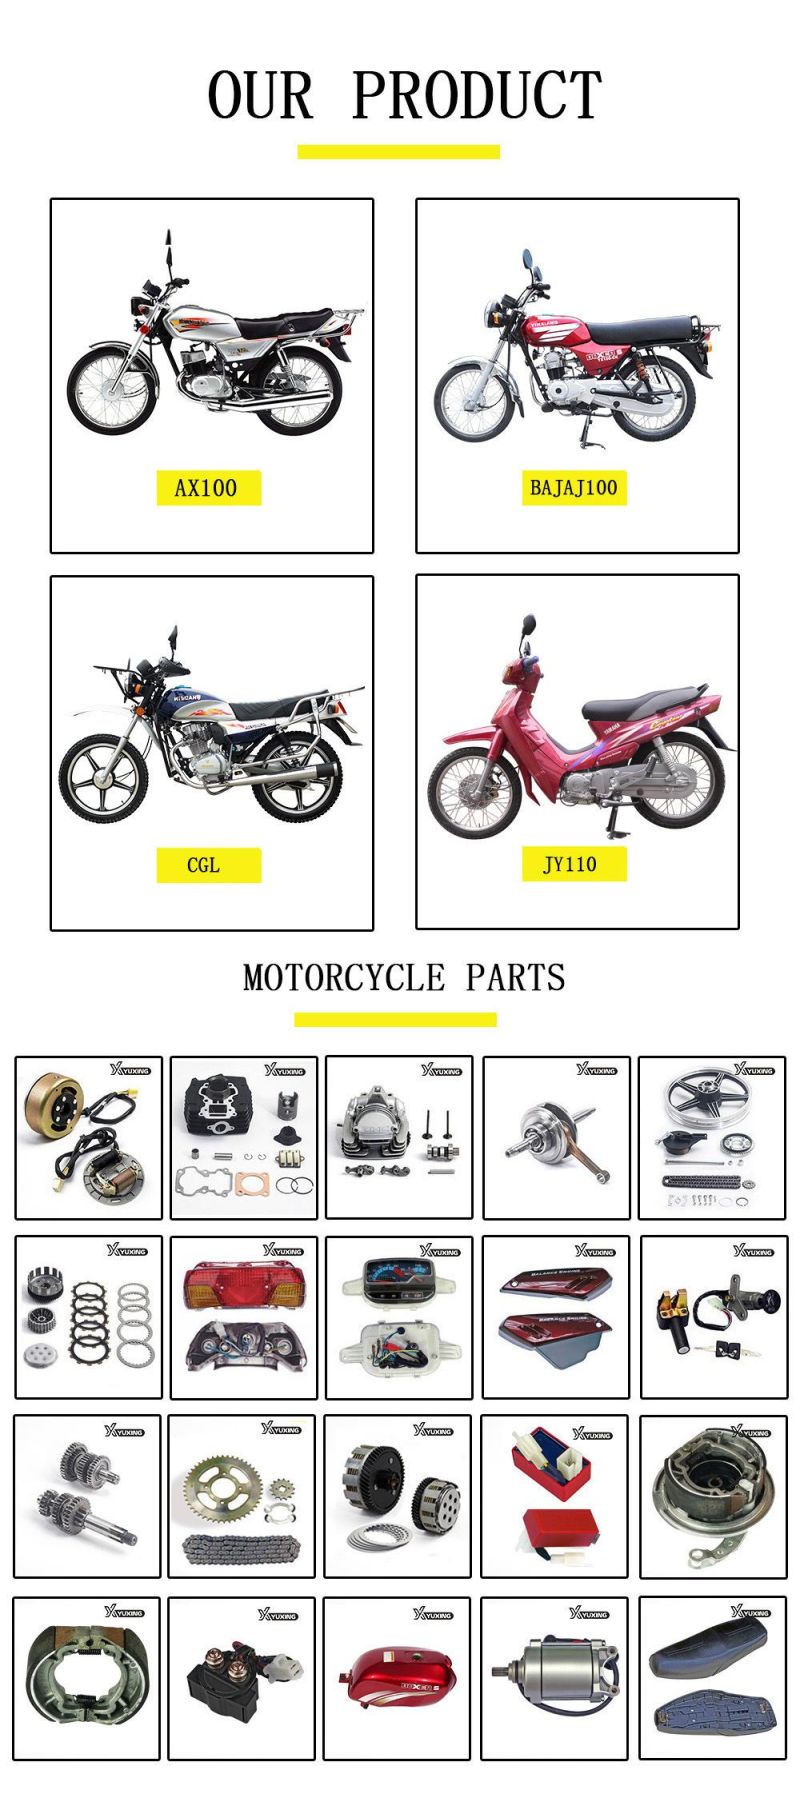 Bajaj100 Motorcycle Engine Parts Motorcyc Piston